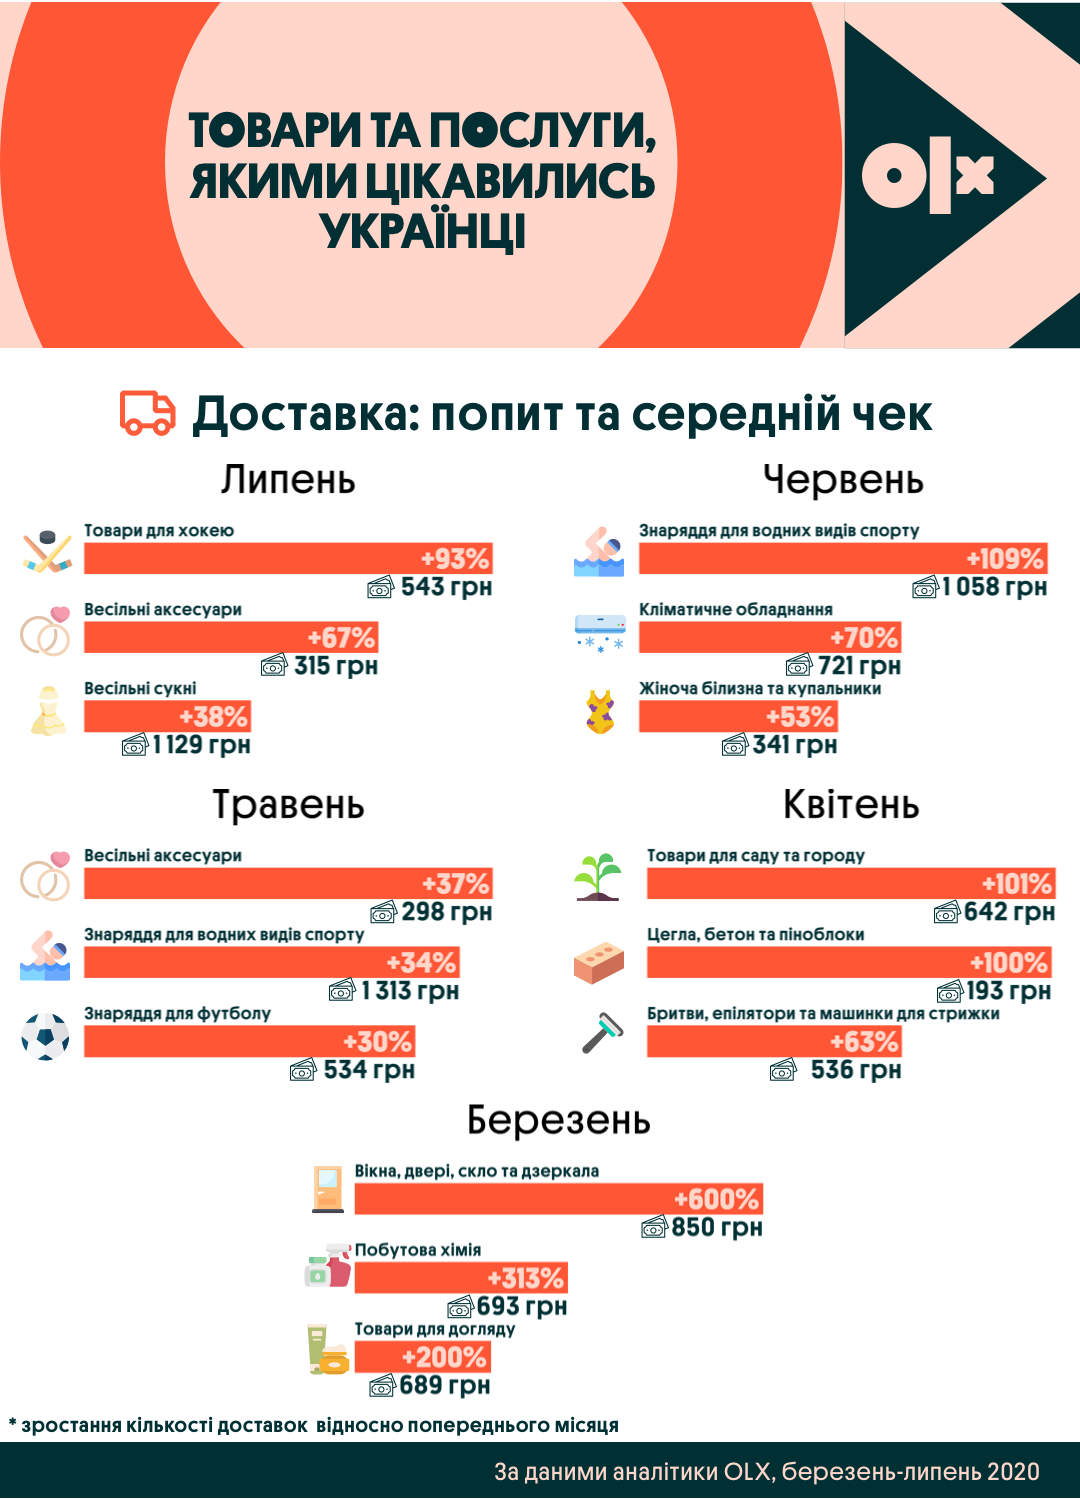 Придбати хлібопічку та підстригтися: якими товарами та послугами цікавилися українці за останні пів року